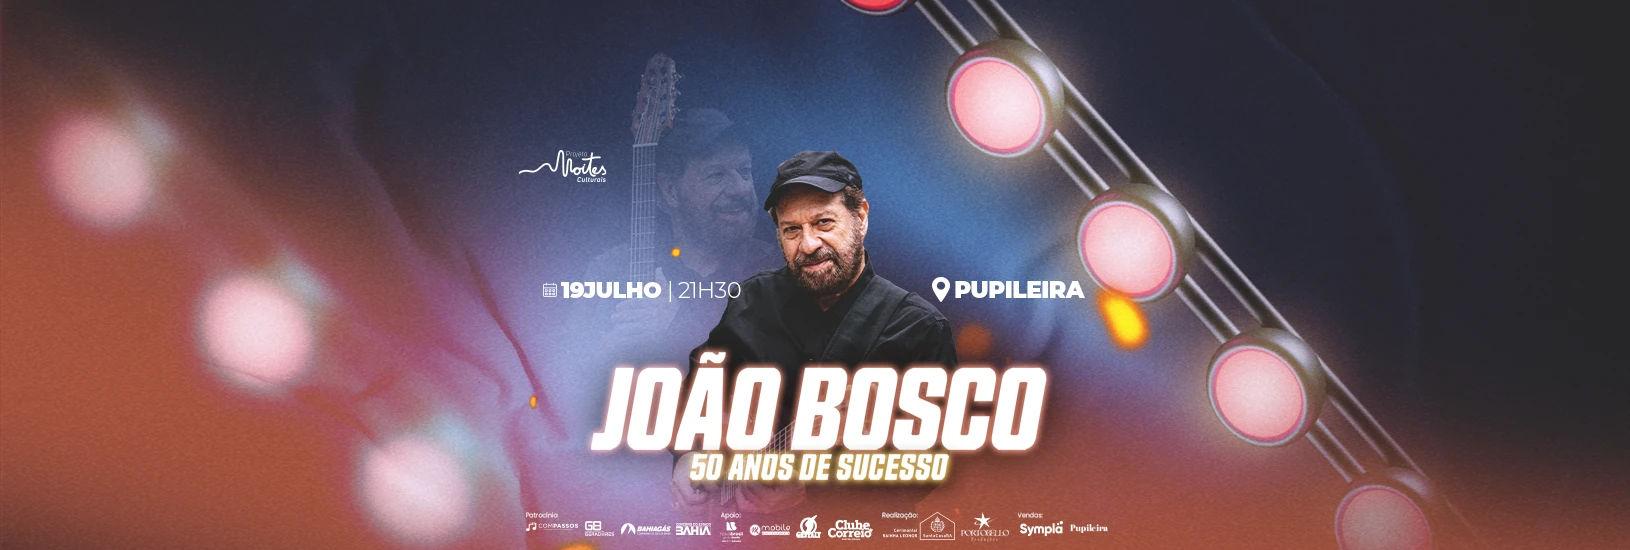 Show João Bosco 